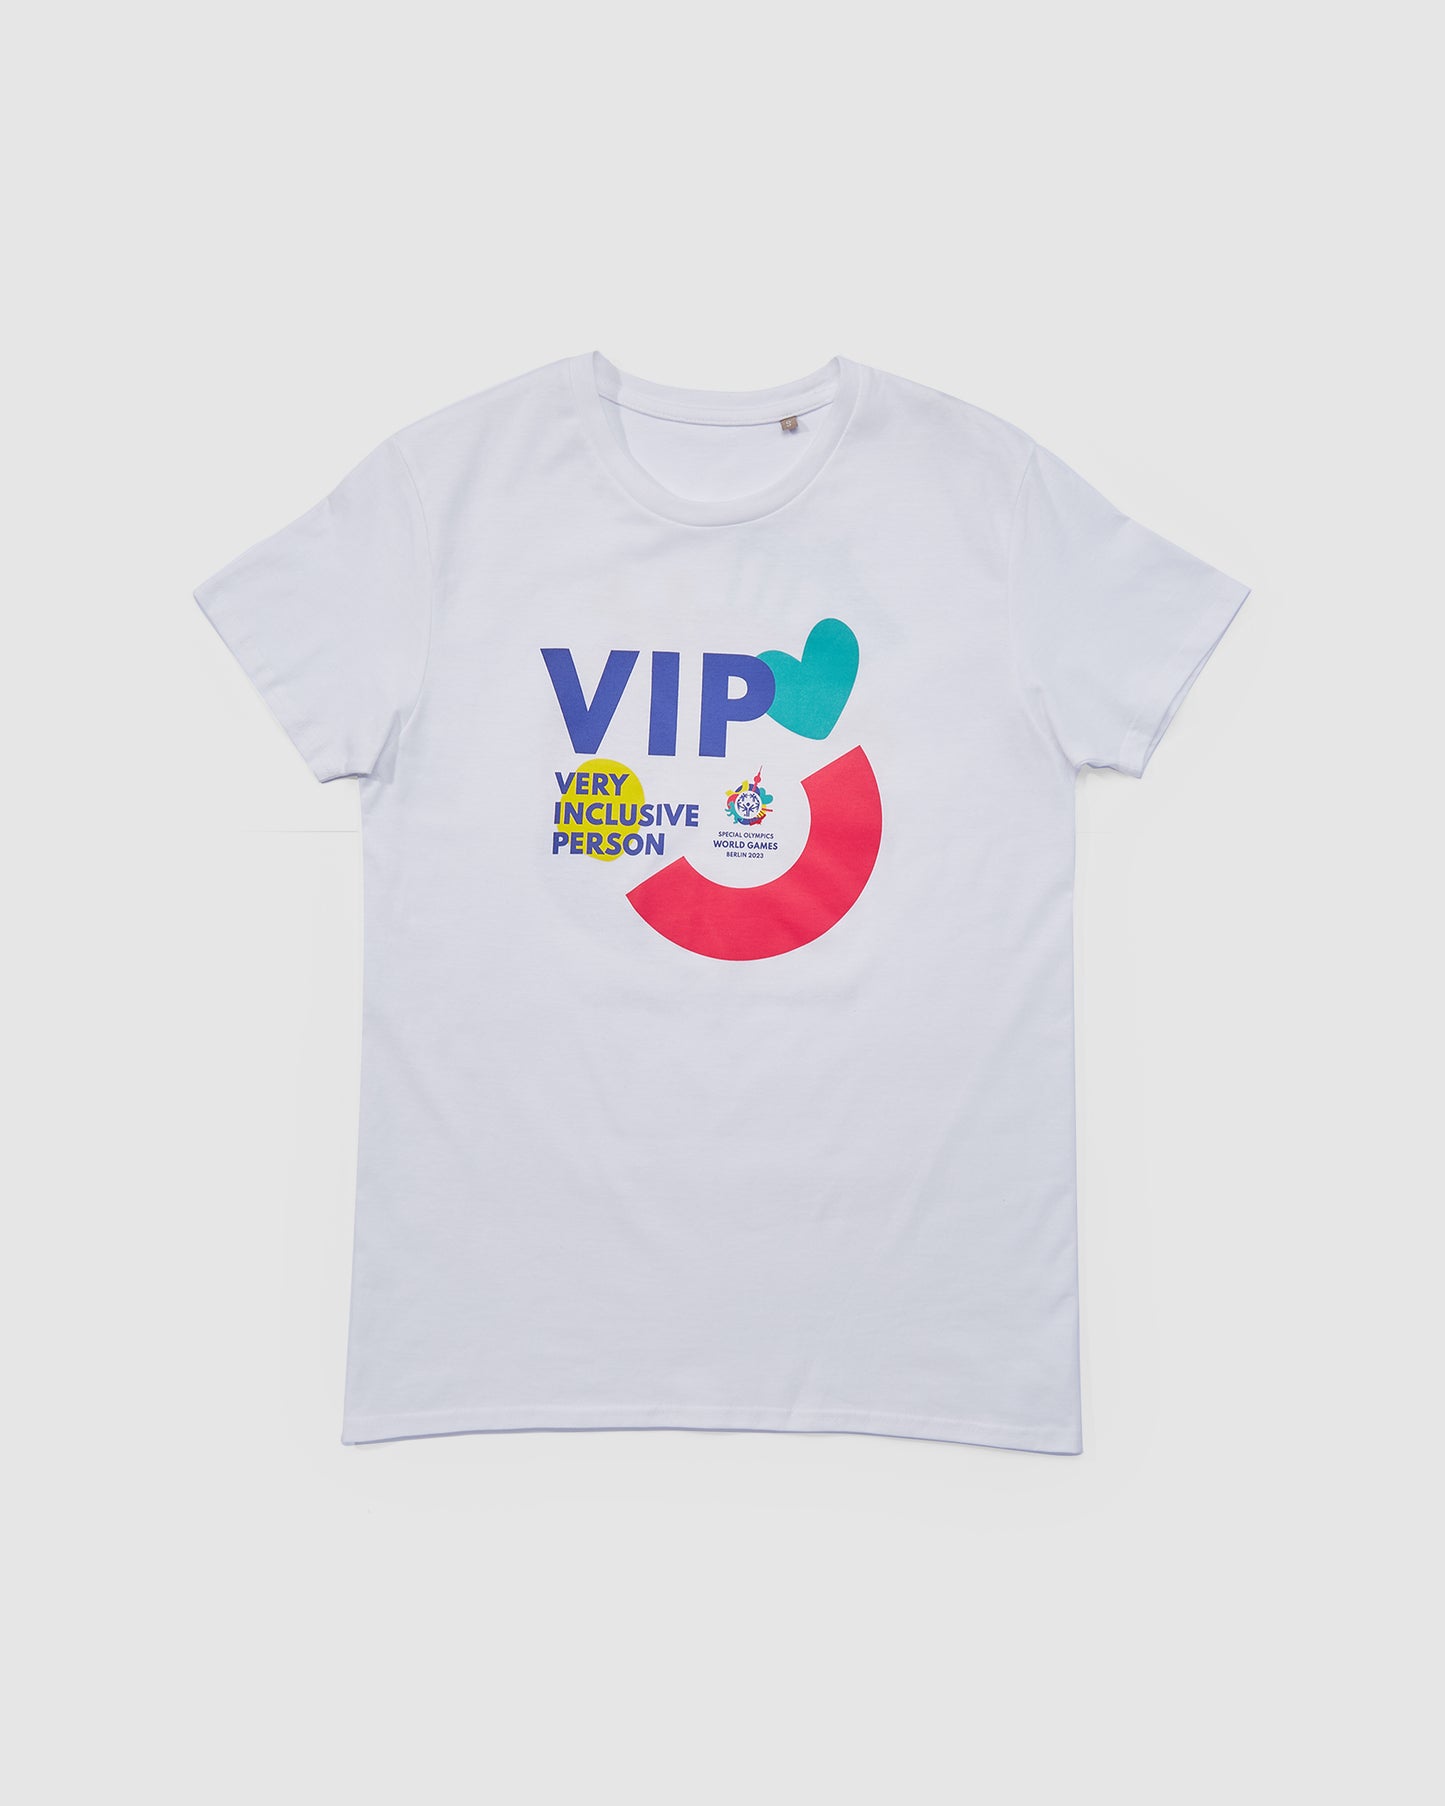 Designer T-shirt VIP - Very Inclusive Person